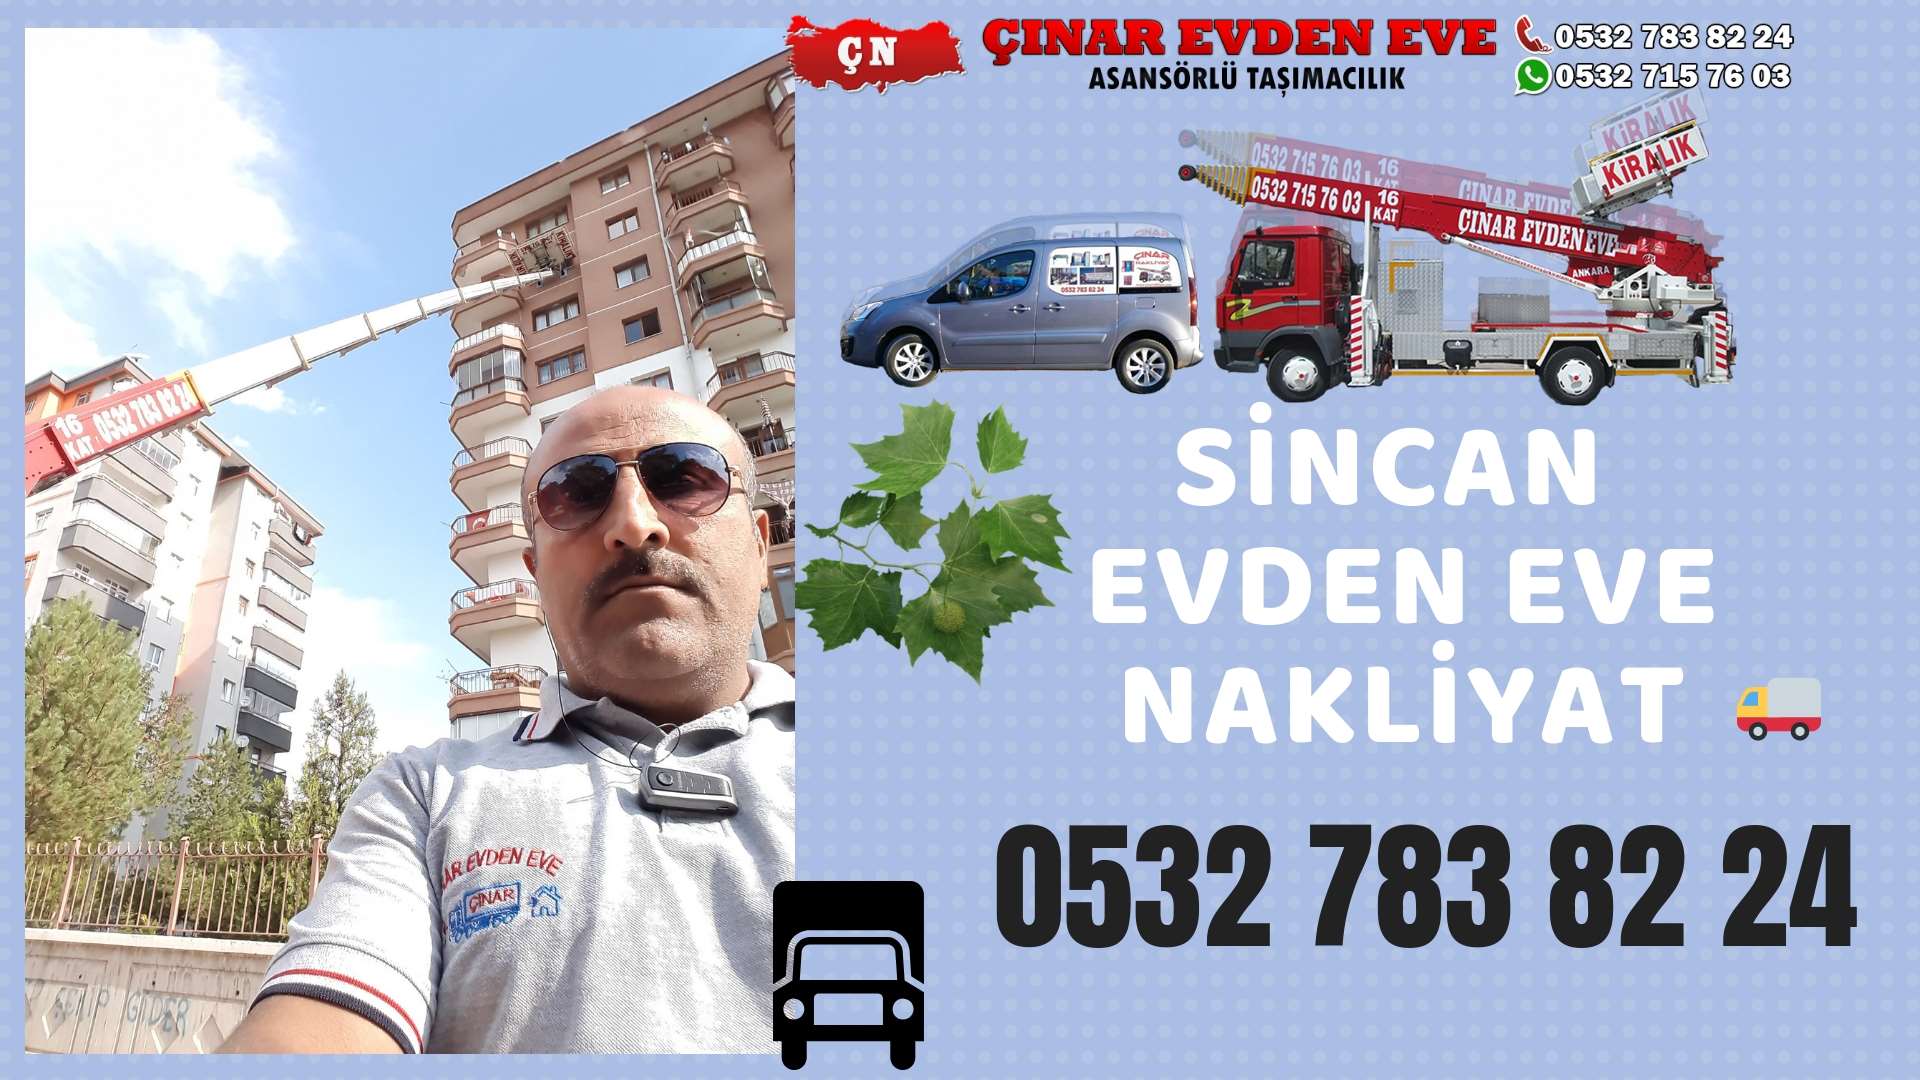 Ankara Bala Evden Eve Nakliyat, Asansörlü Taşımacılık, Ofis / İş Yeri Taşıma 0532 715 76 03